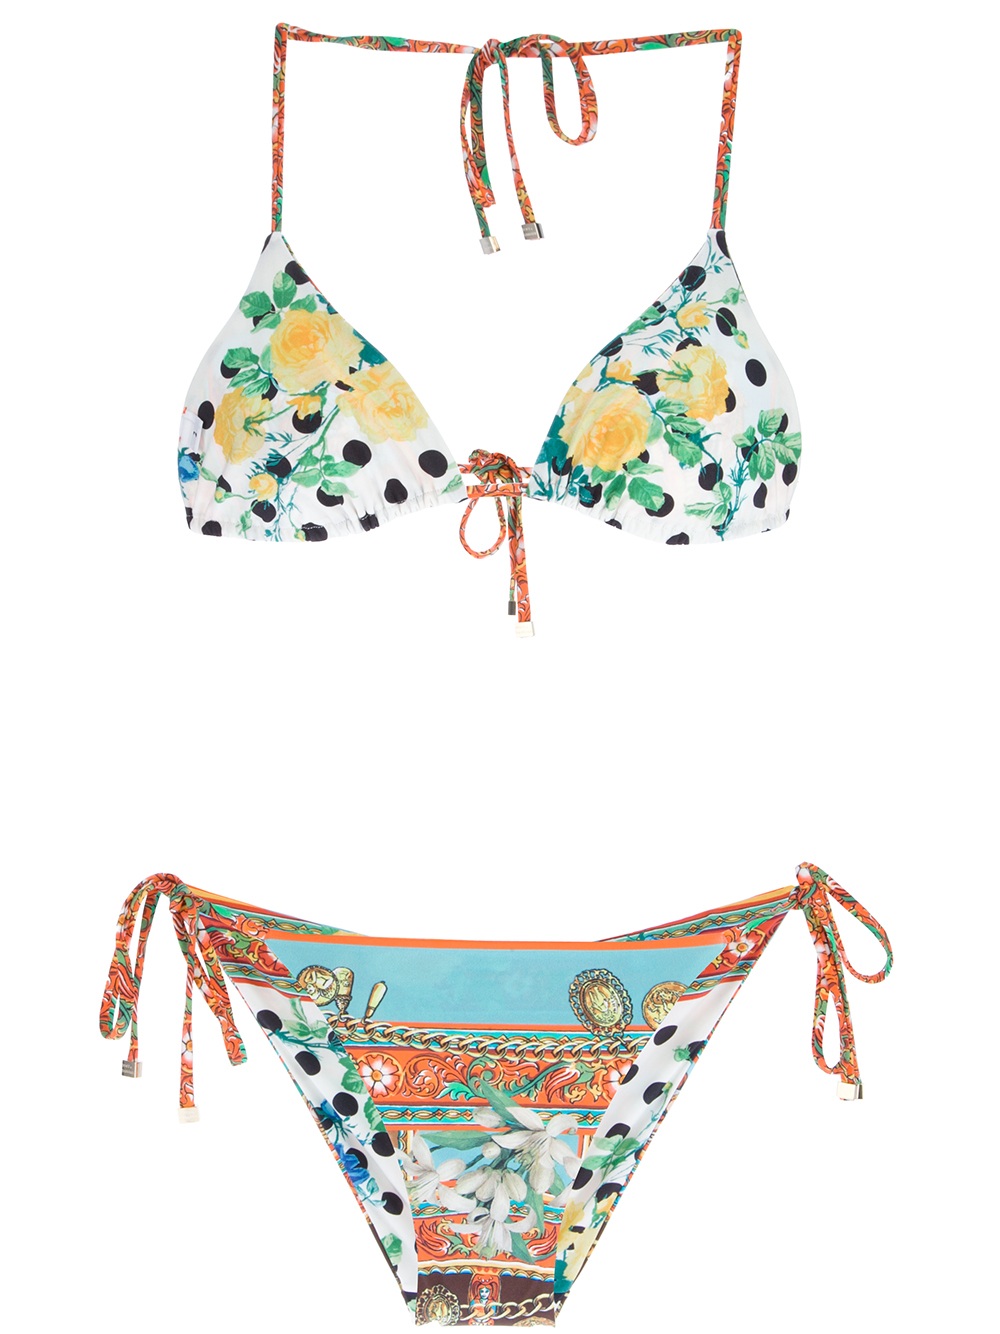 Lyst - Dolce & gabbana Sicily Print Bikini